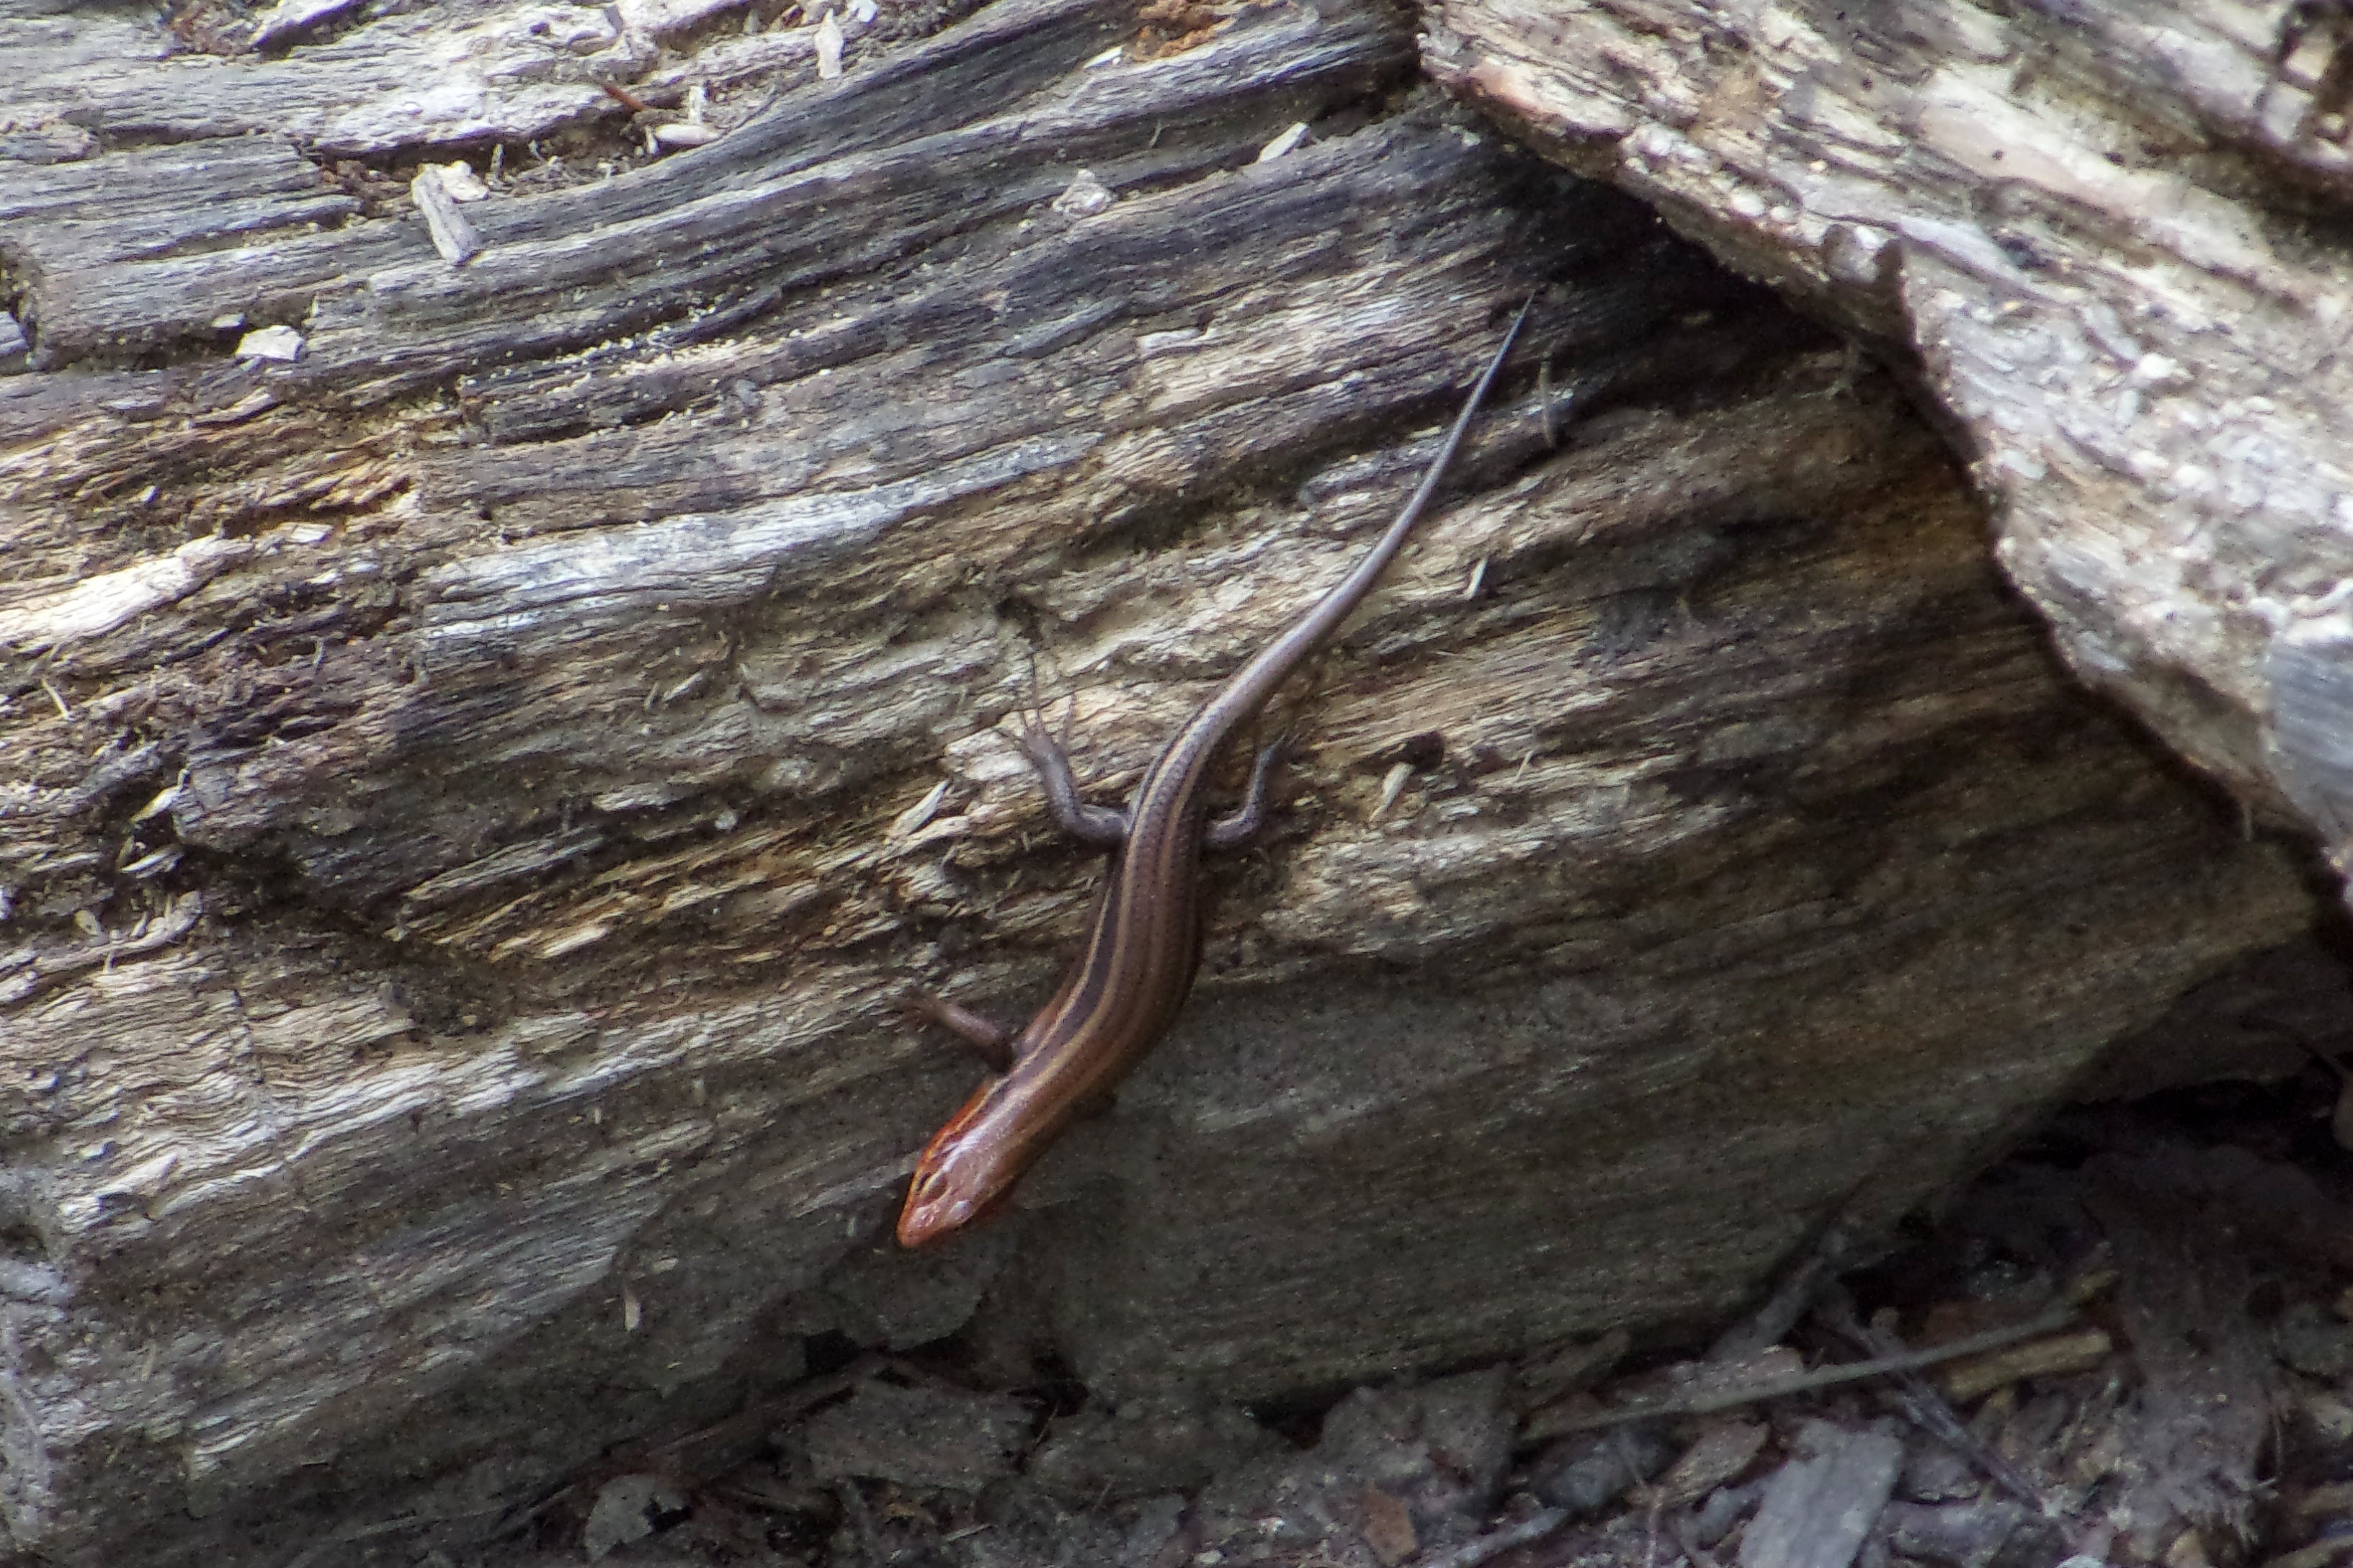 Salamander in Camp #2